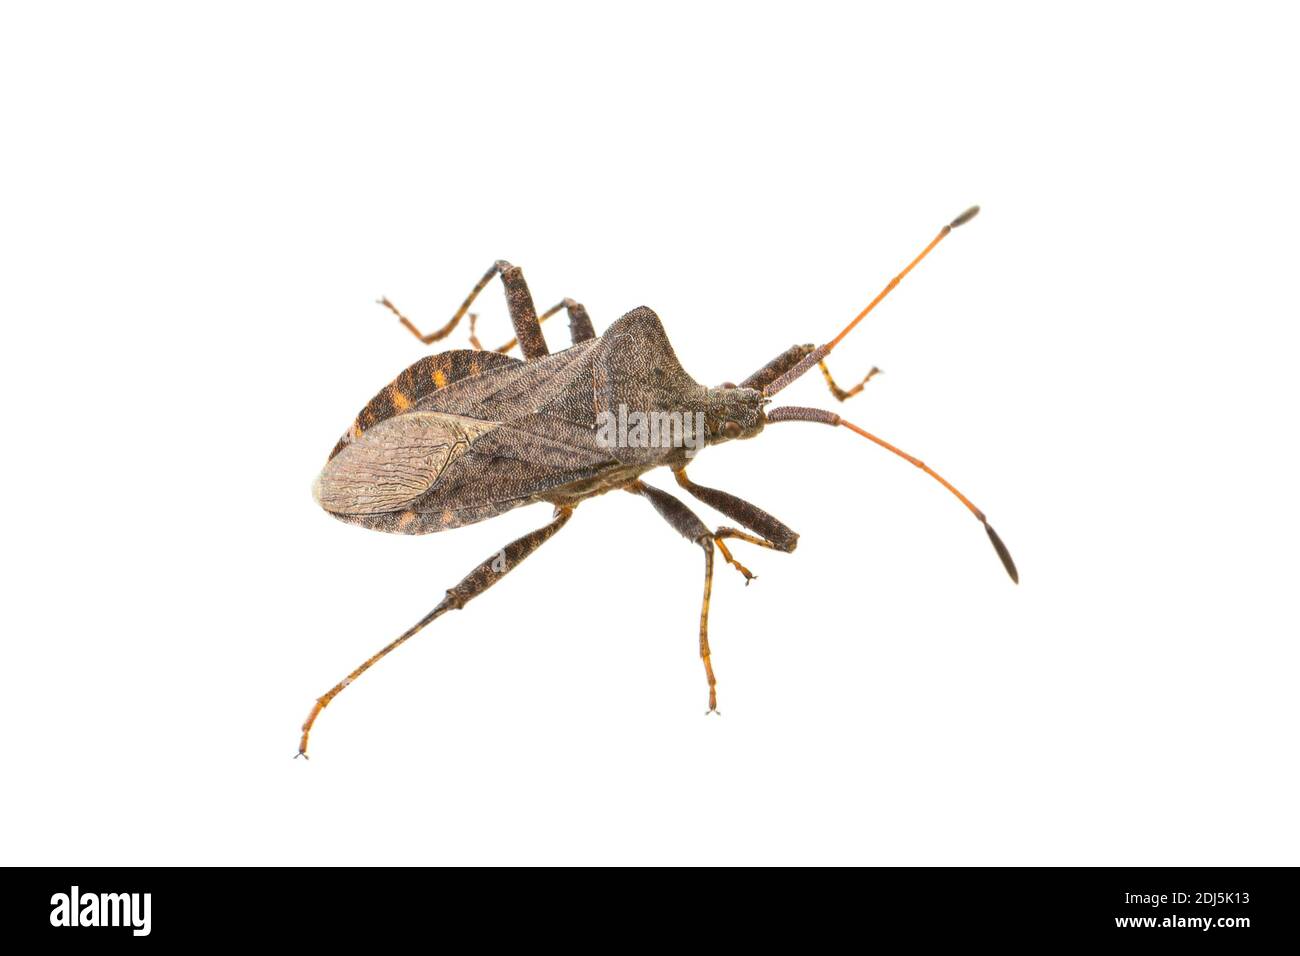 side view of living adult dock bug (Coreus marginatus) isolated on white background Stock Photo